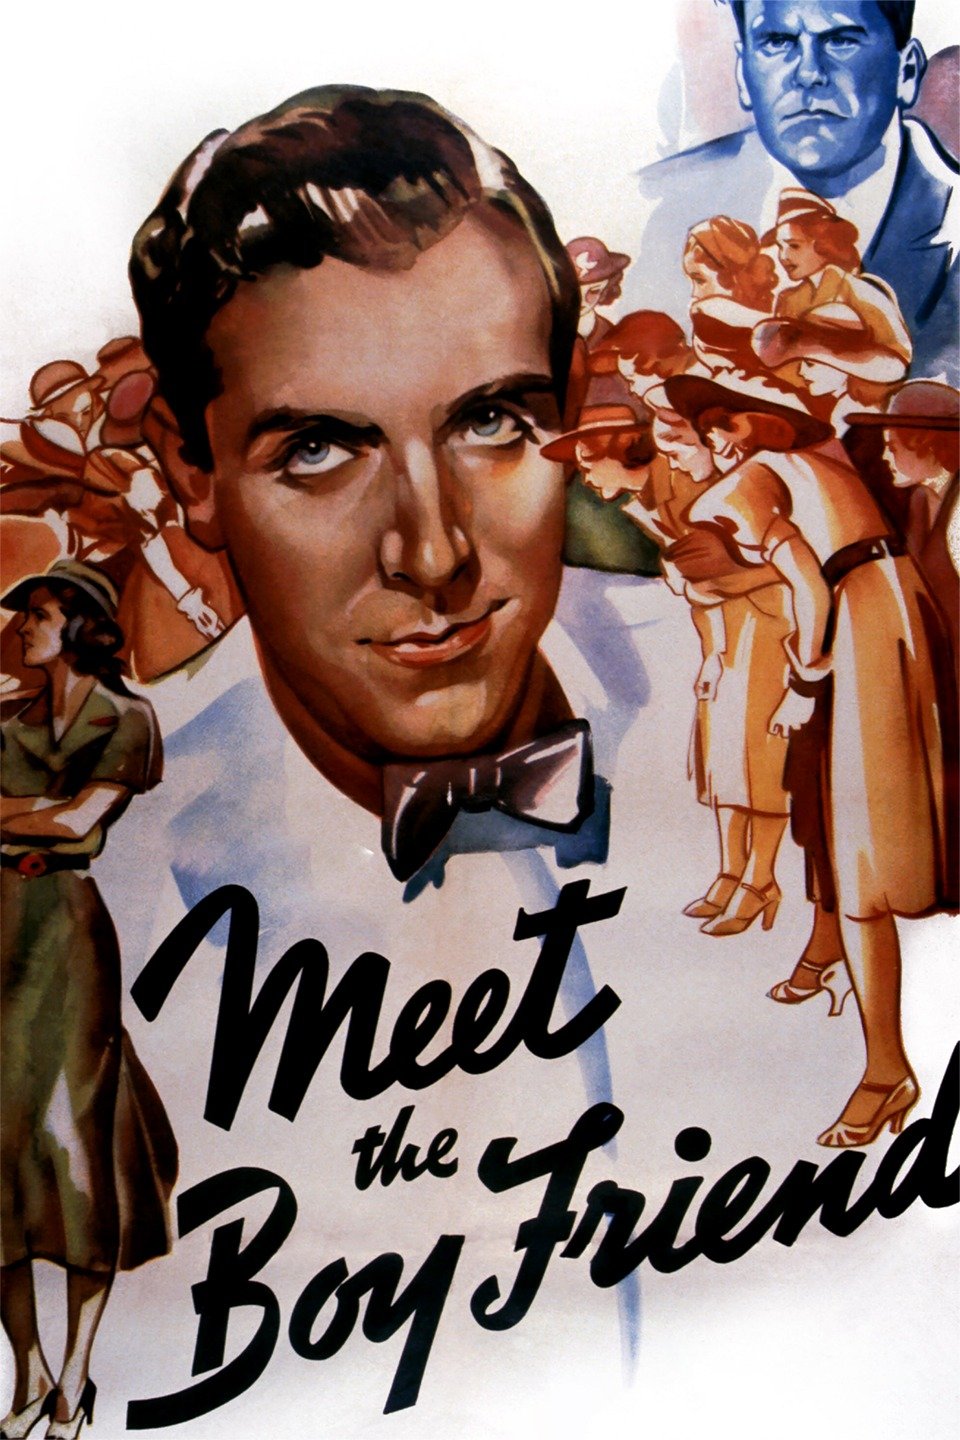 Meet the Boy Friend (1937) Screenshot 1 